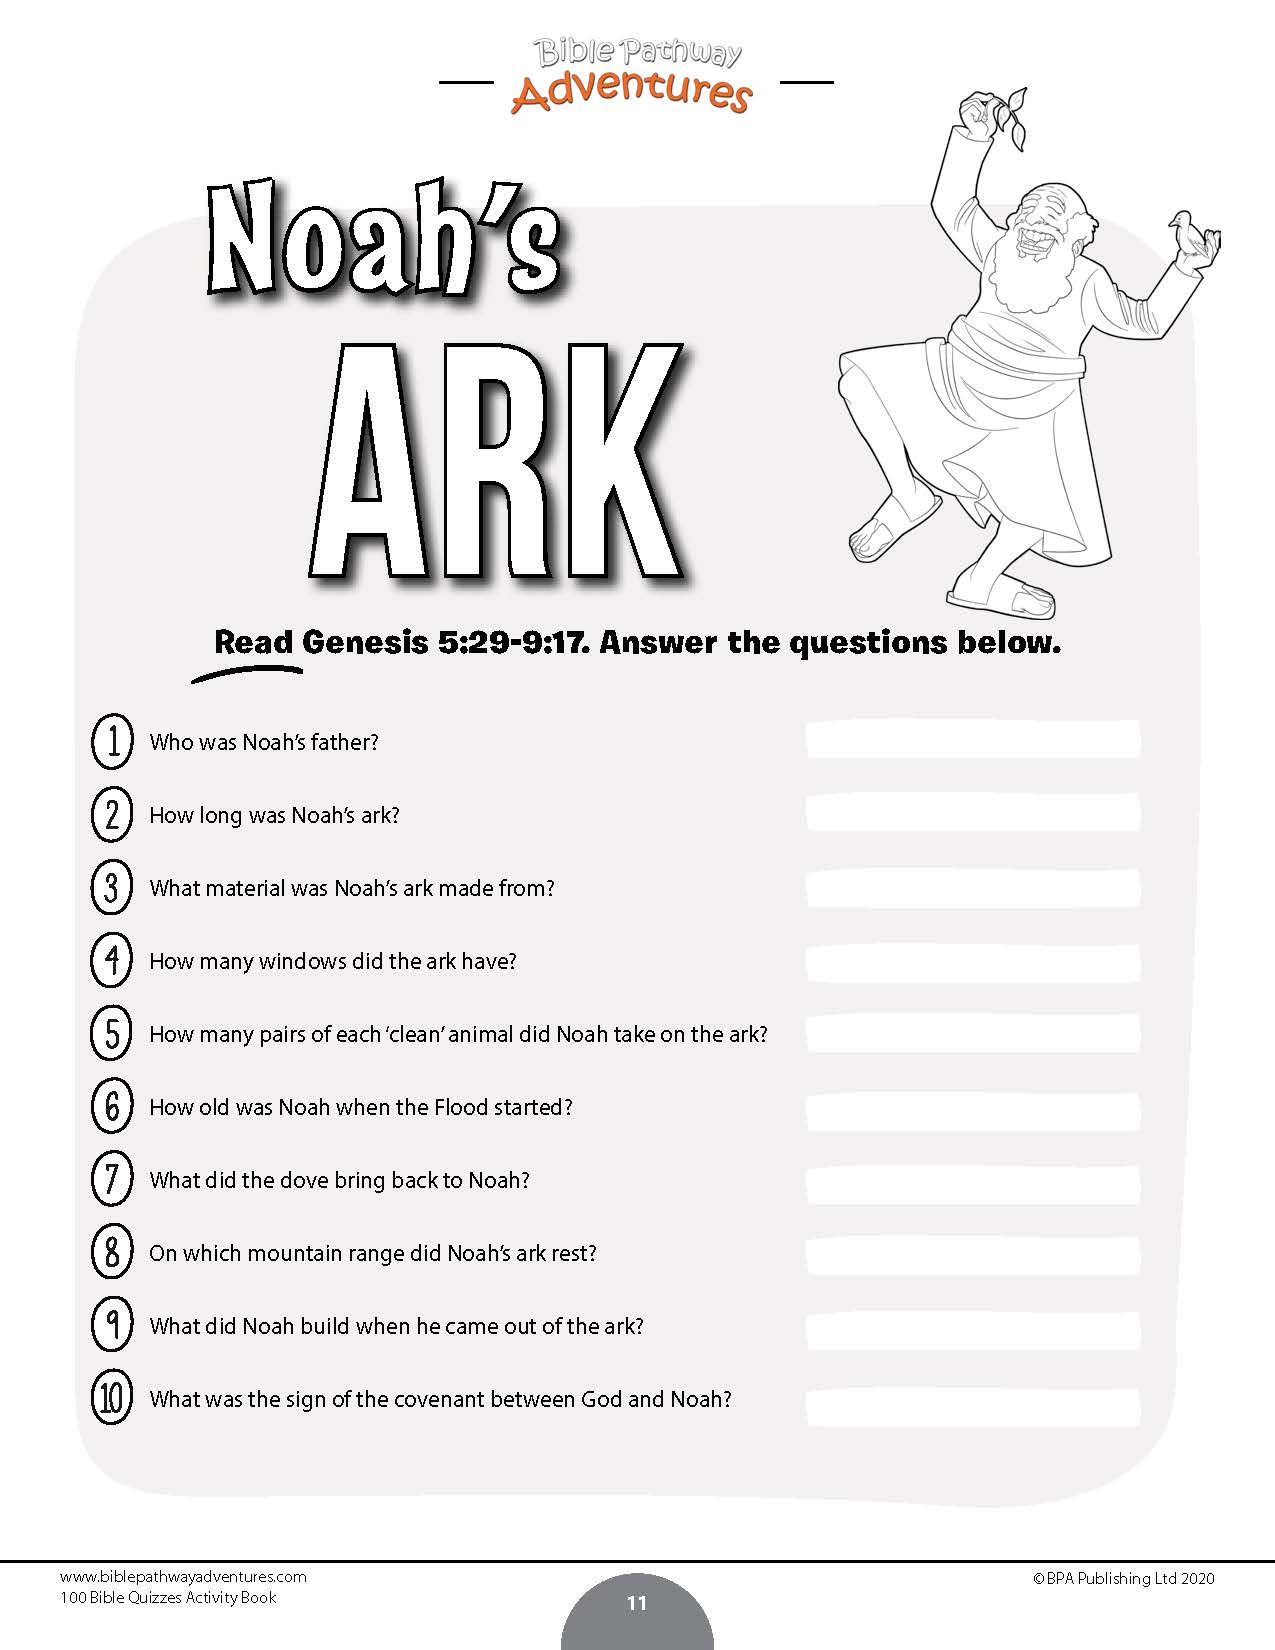 Noah's Ark bible quiz